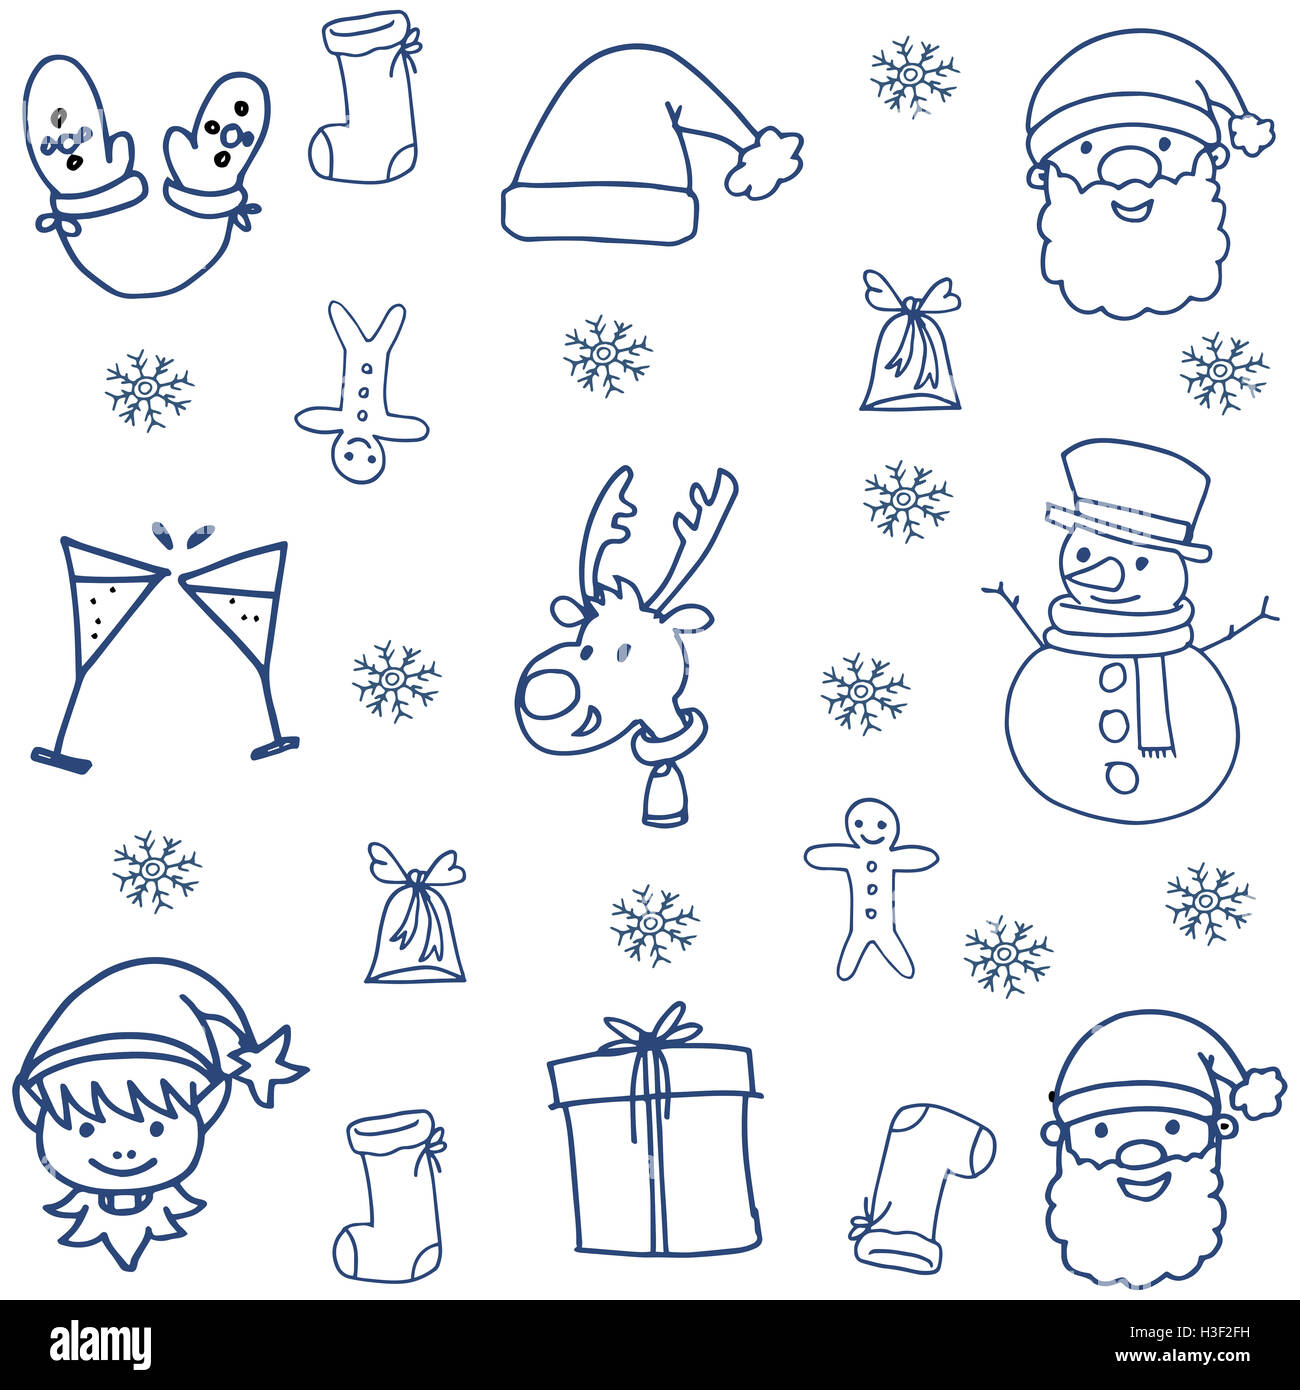 Doodle von Hand zeichnen Weihnachten Objekt Vektor-illustration  Stockfotografie - Alamy